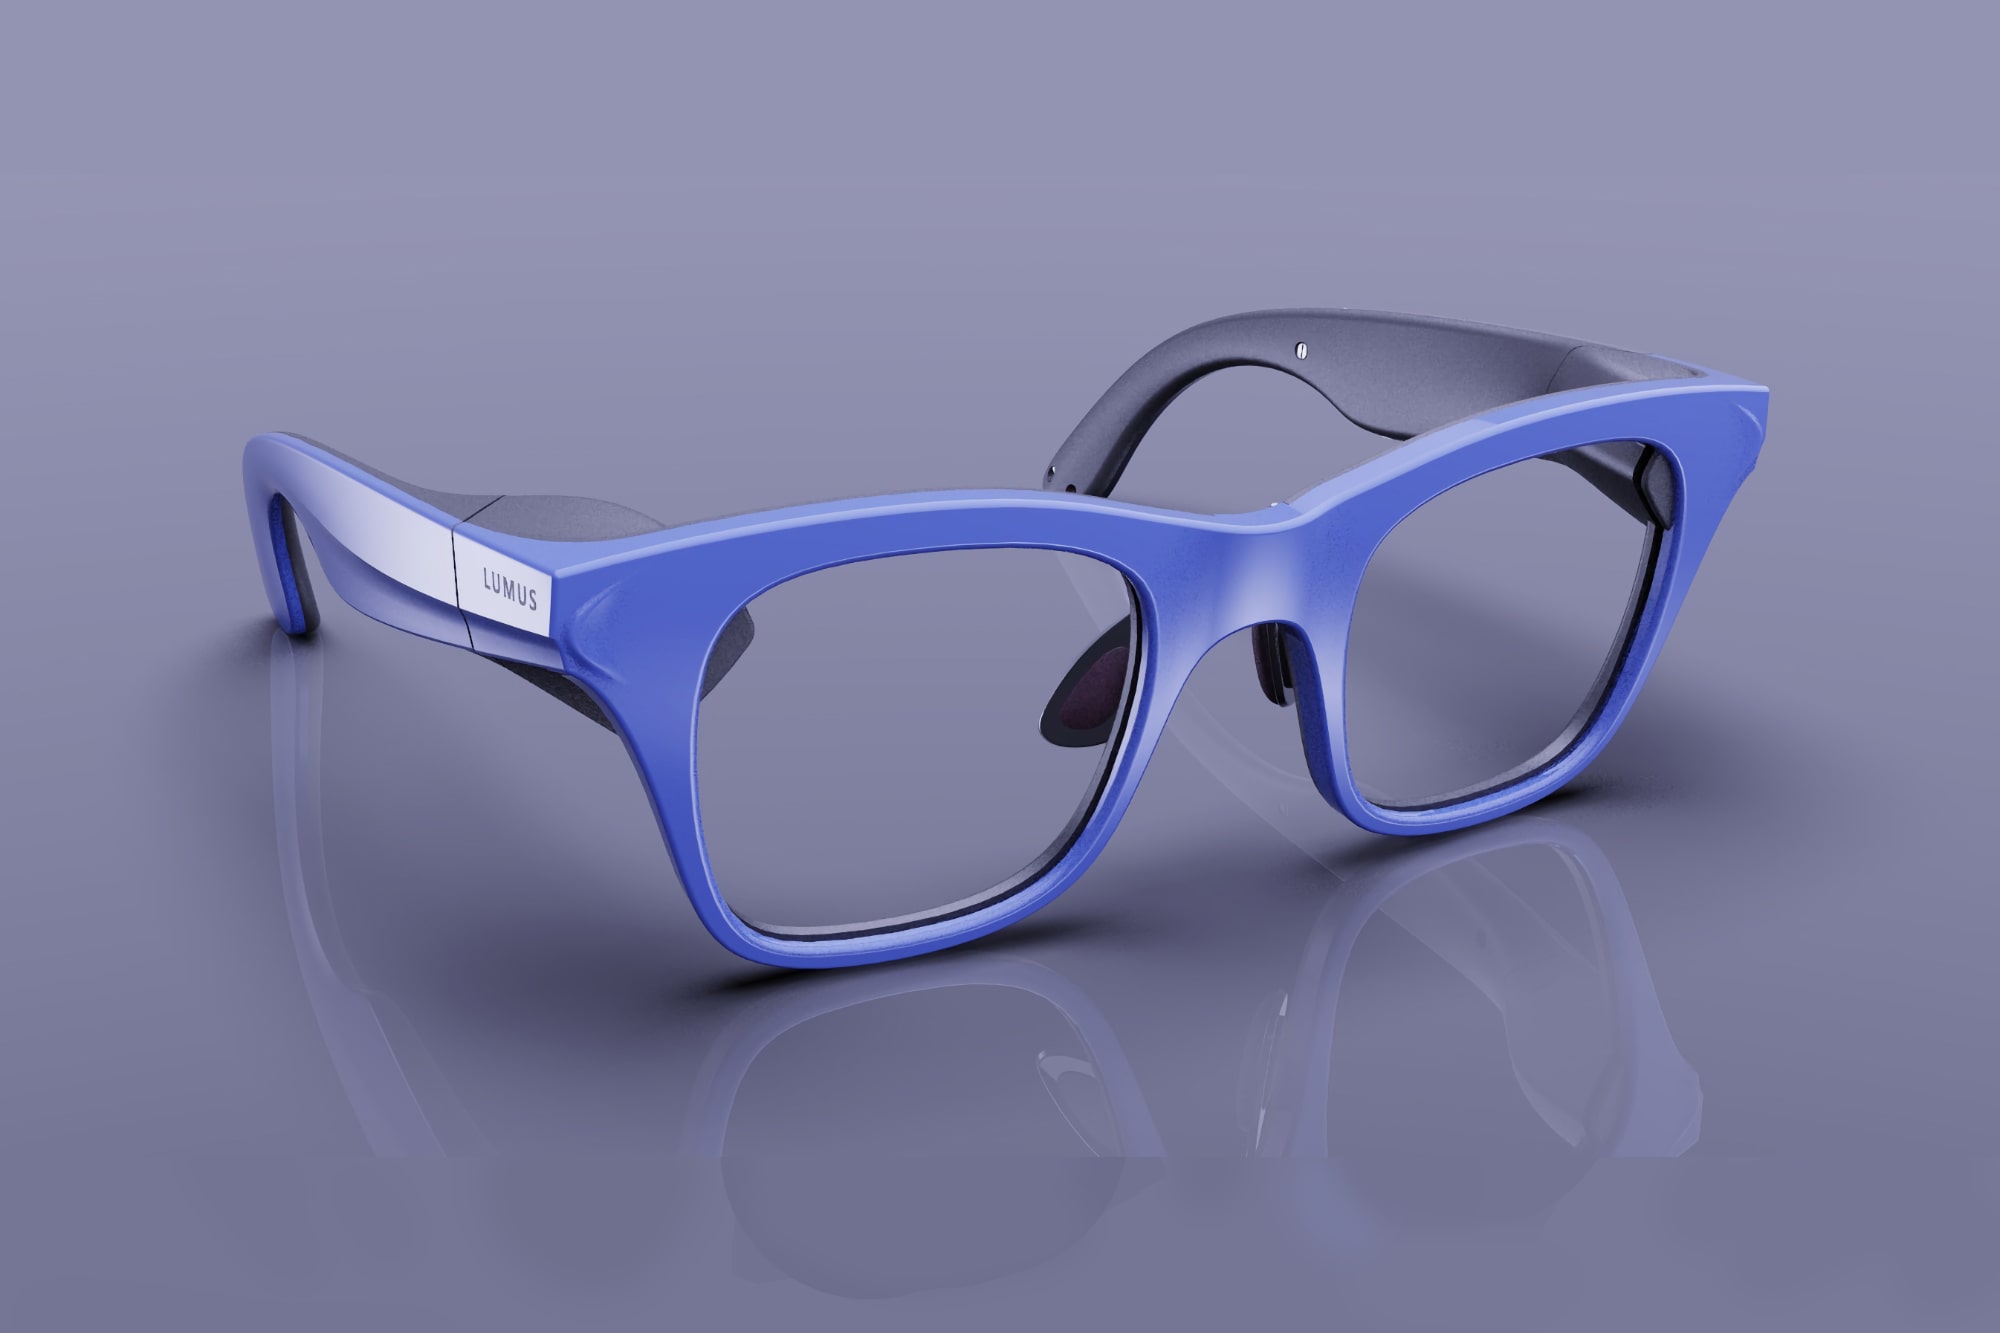 O guia de ondas Lumus Z-Lens permite óculos AR finos e elegantes